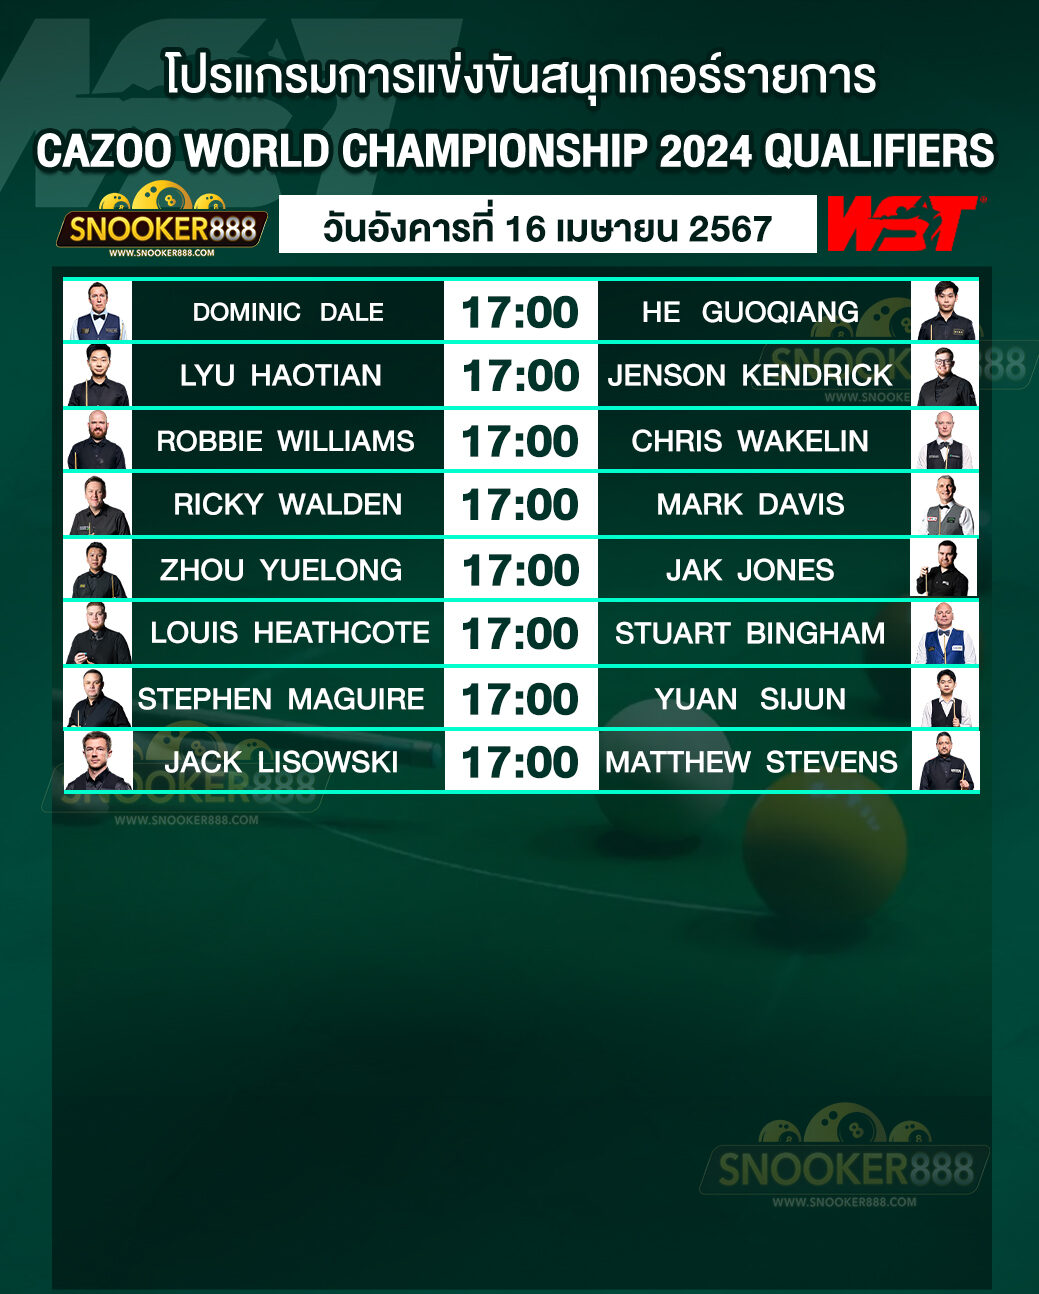 โปรแกรมการแข่งขันสนุกเกอร์ CAZOO WORLD CHAMPIONSHIP 2024 QUALIFIERS วันที่ 16 เม.ย. 67